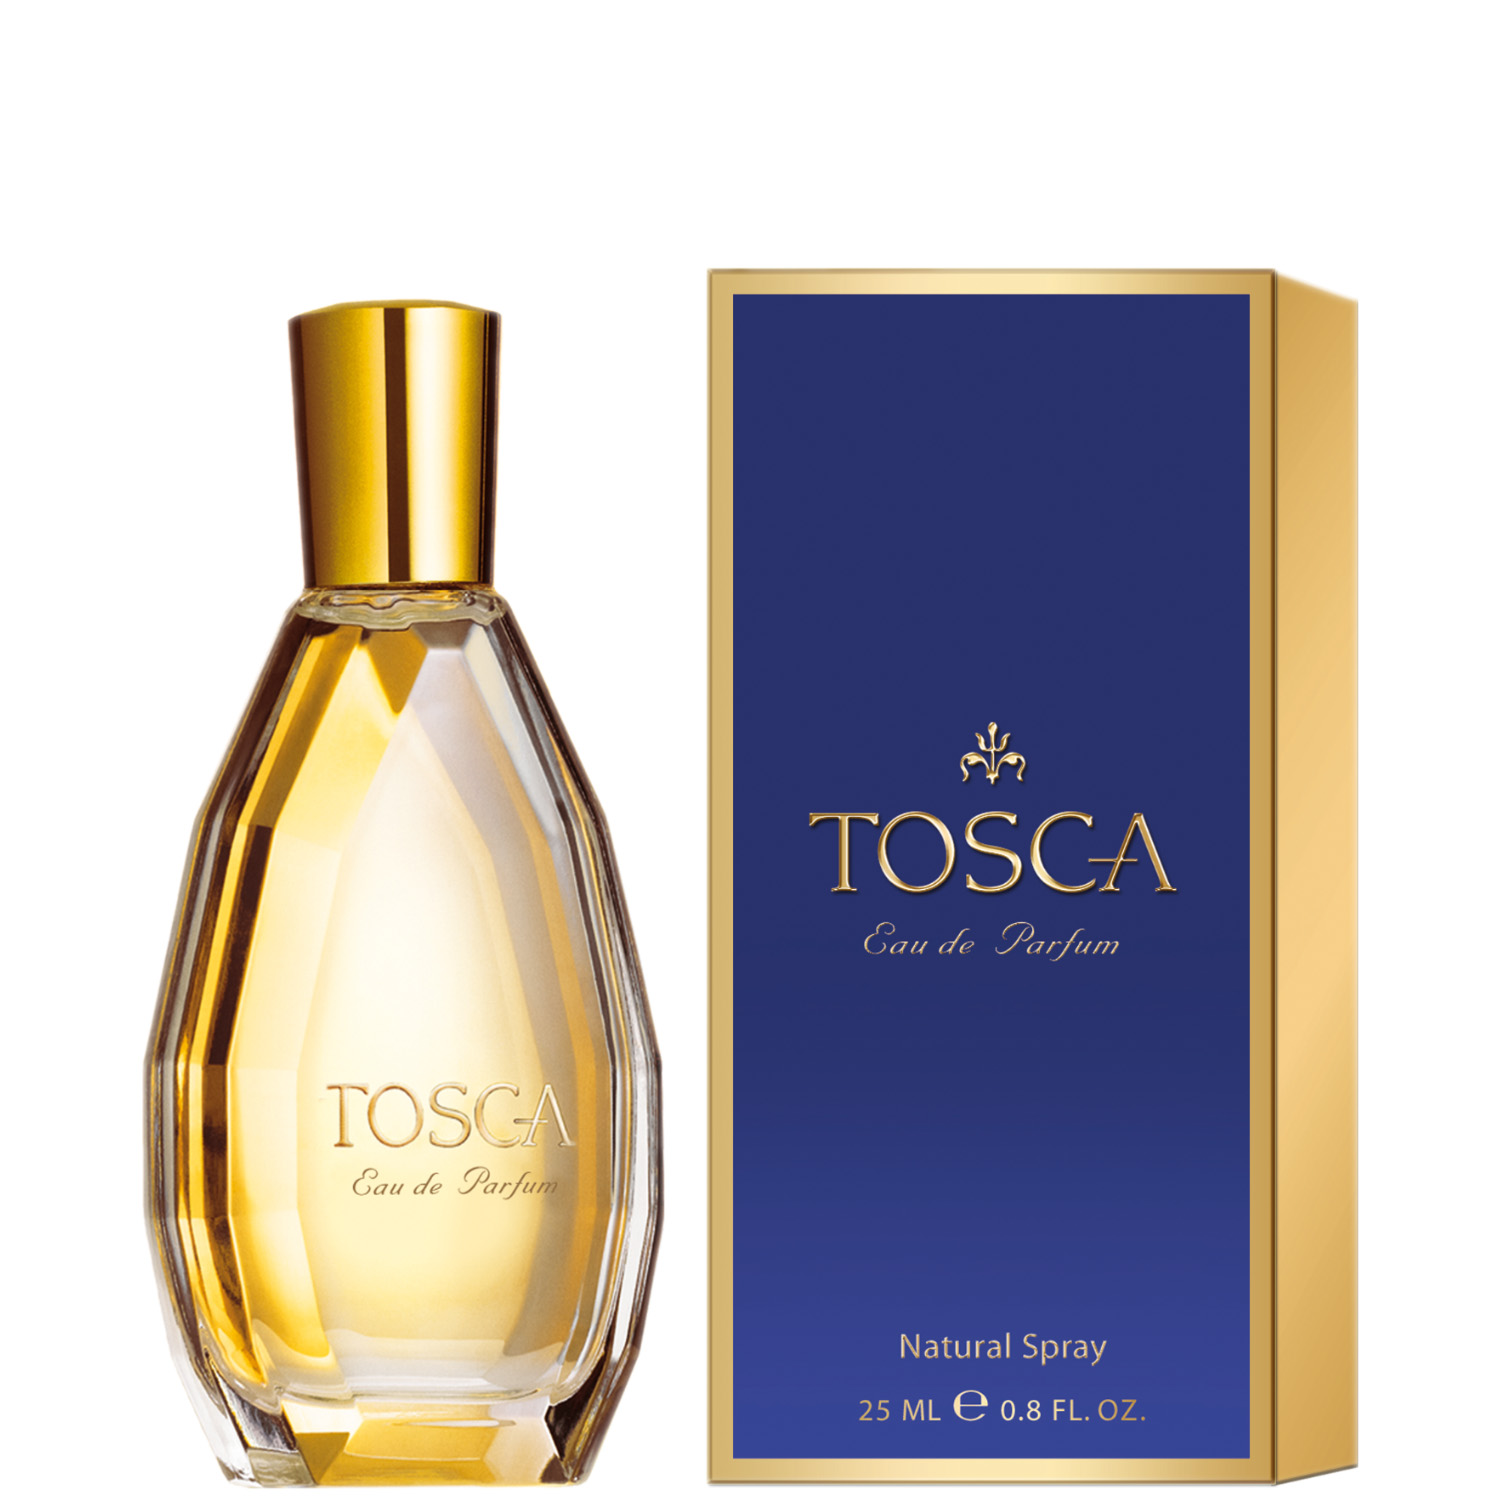 Tosca Eau de Parfum 25ml